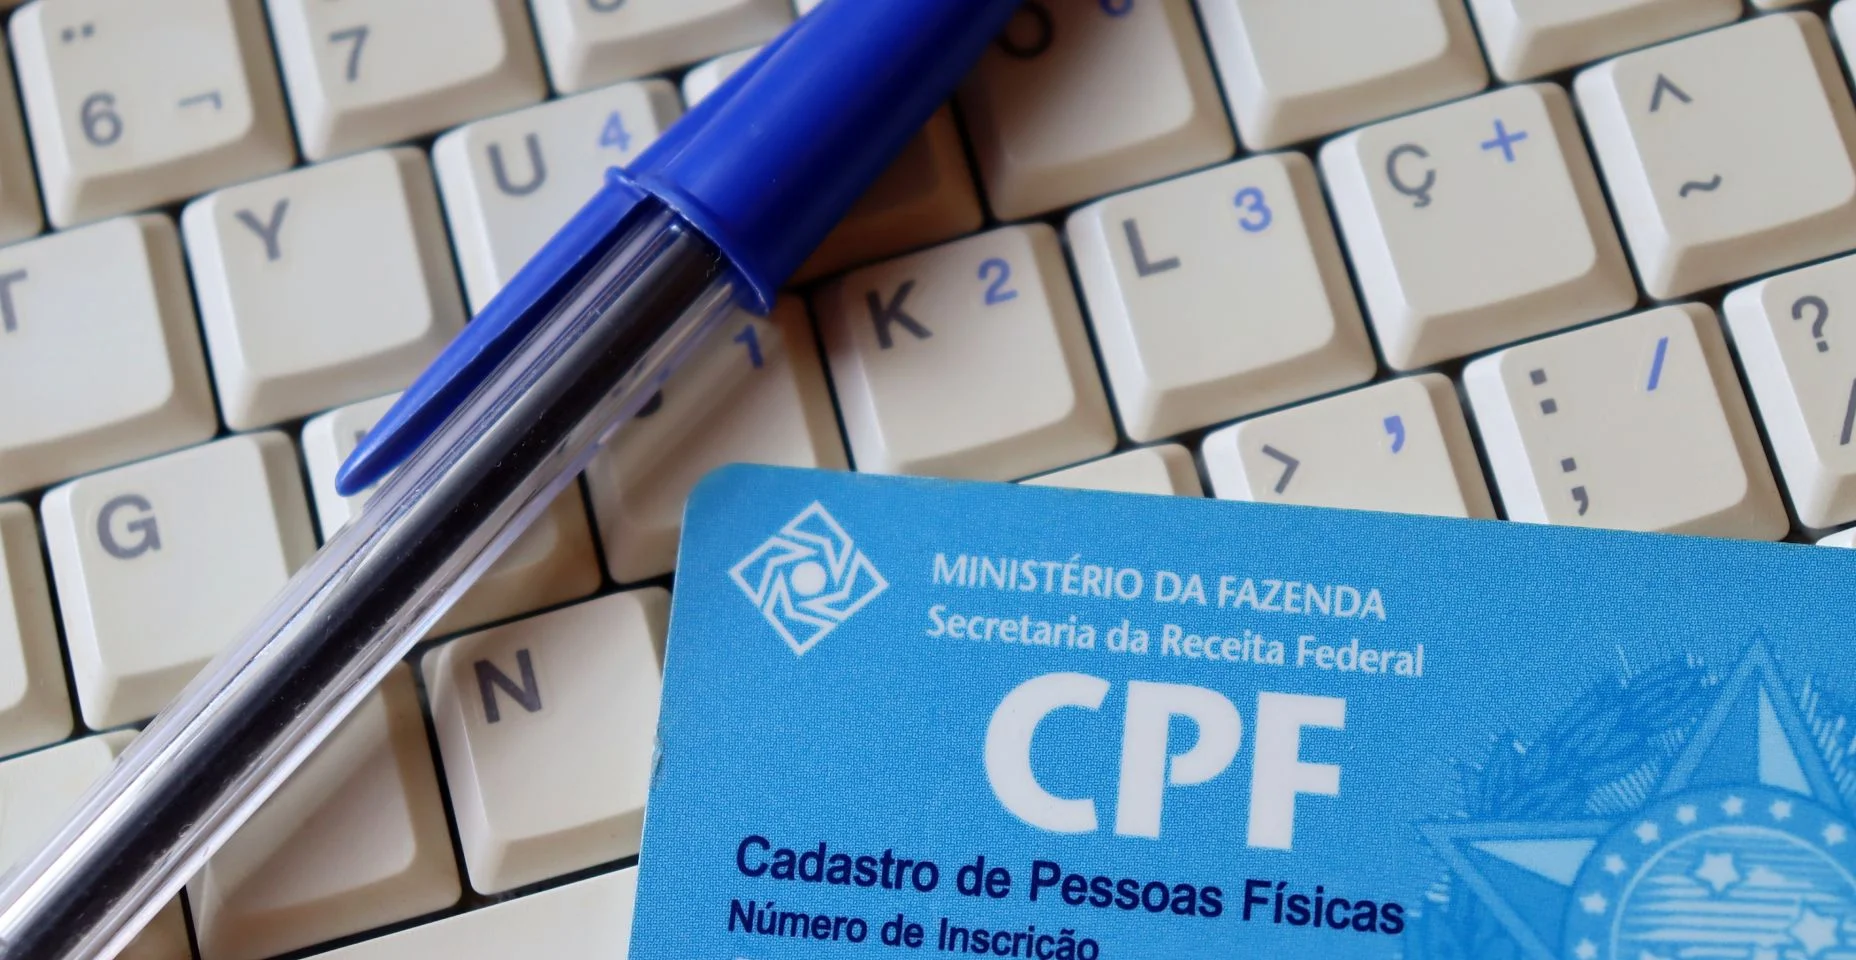 (CPF - Cadastro de Pessoas Físicas) e caneta em cima do computador. O número do CPF é a identificação do cadastro de pessoa física brasileira.